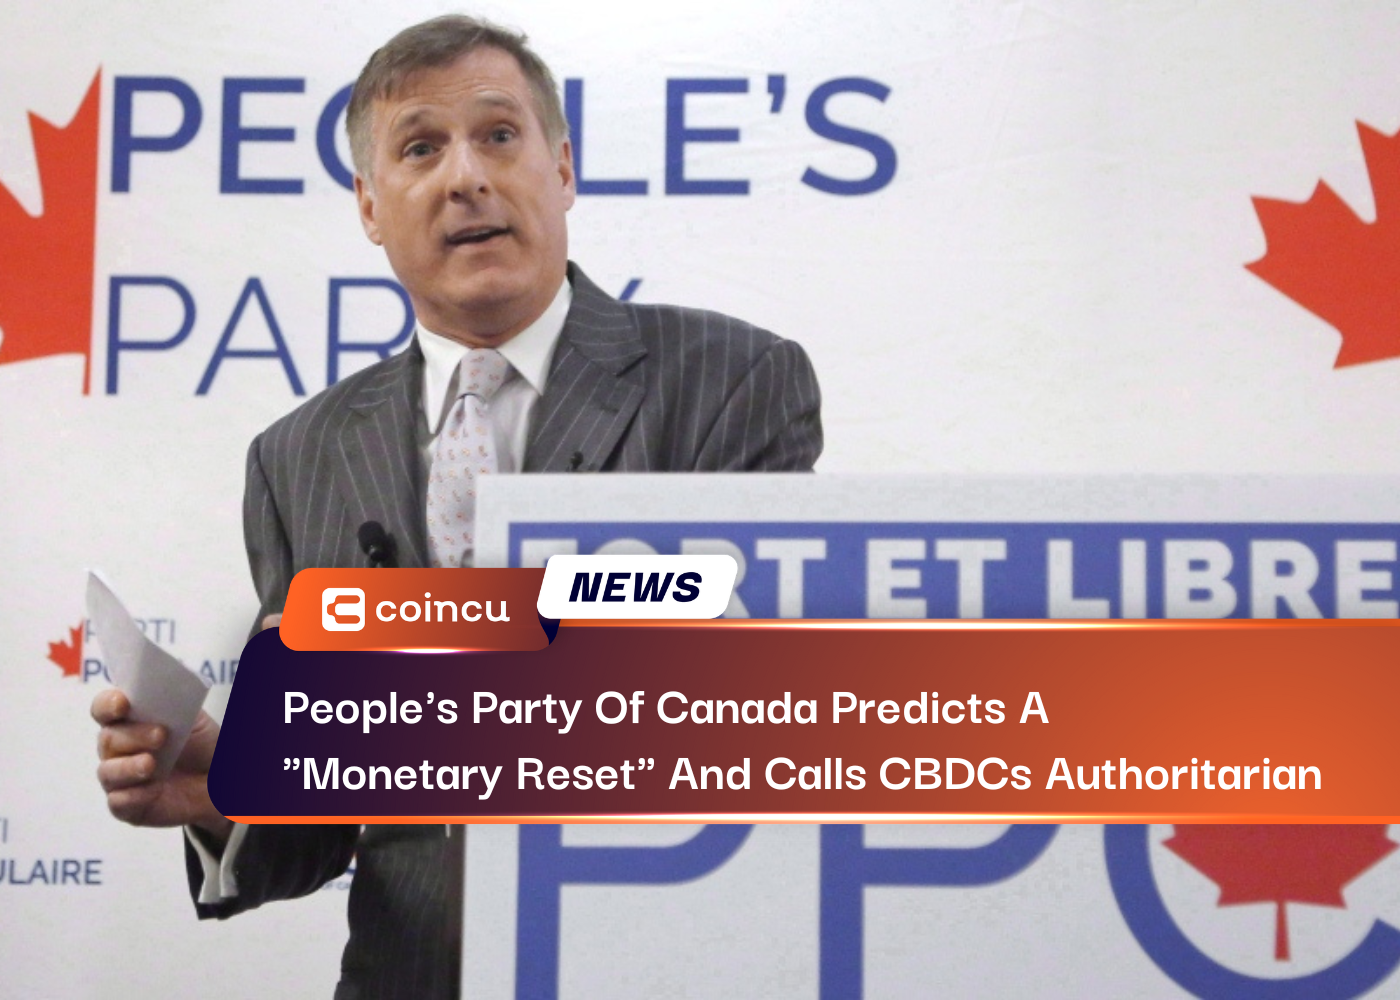 Monetary Reset And Calls CBDCs Authoritarian